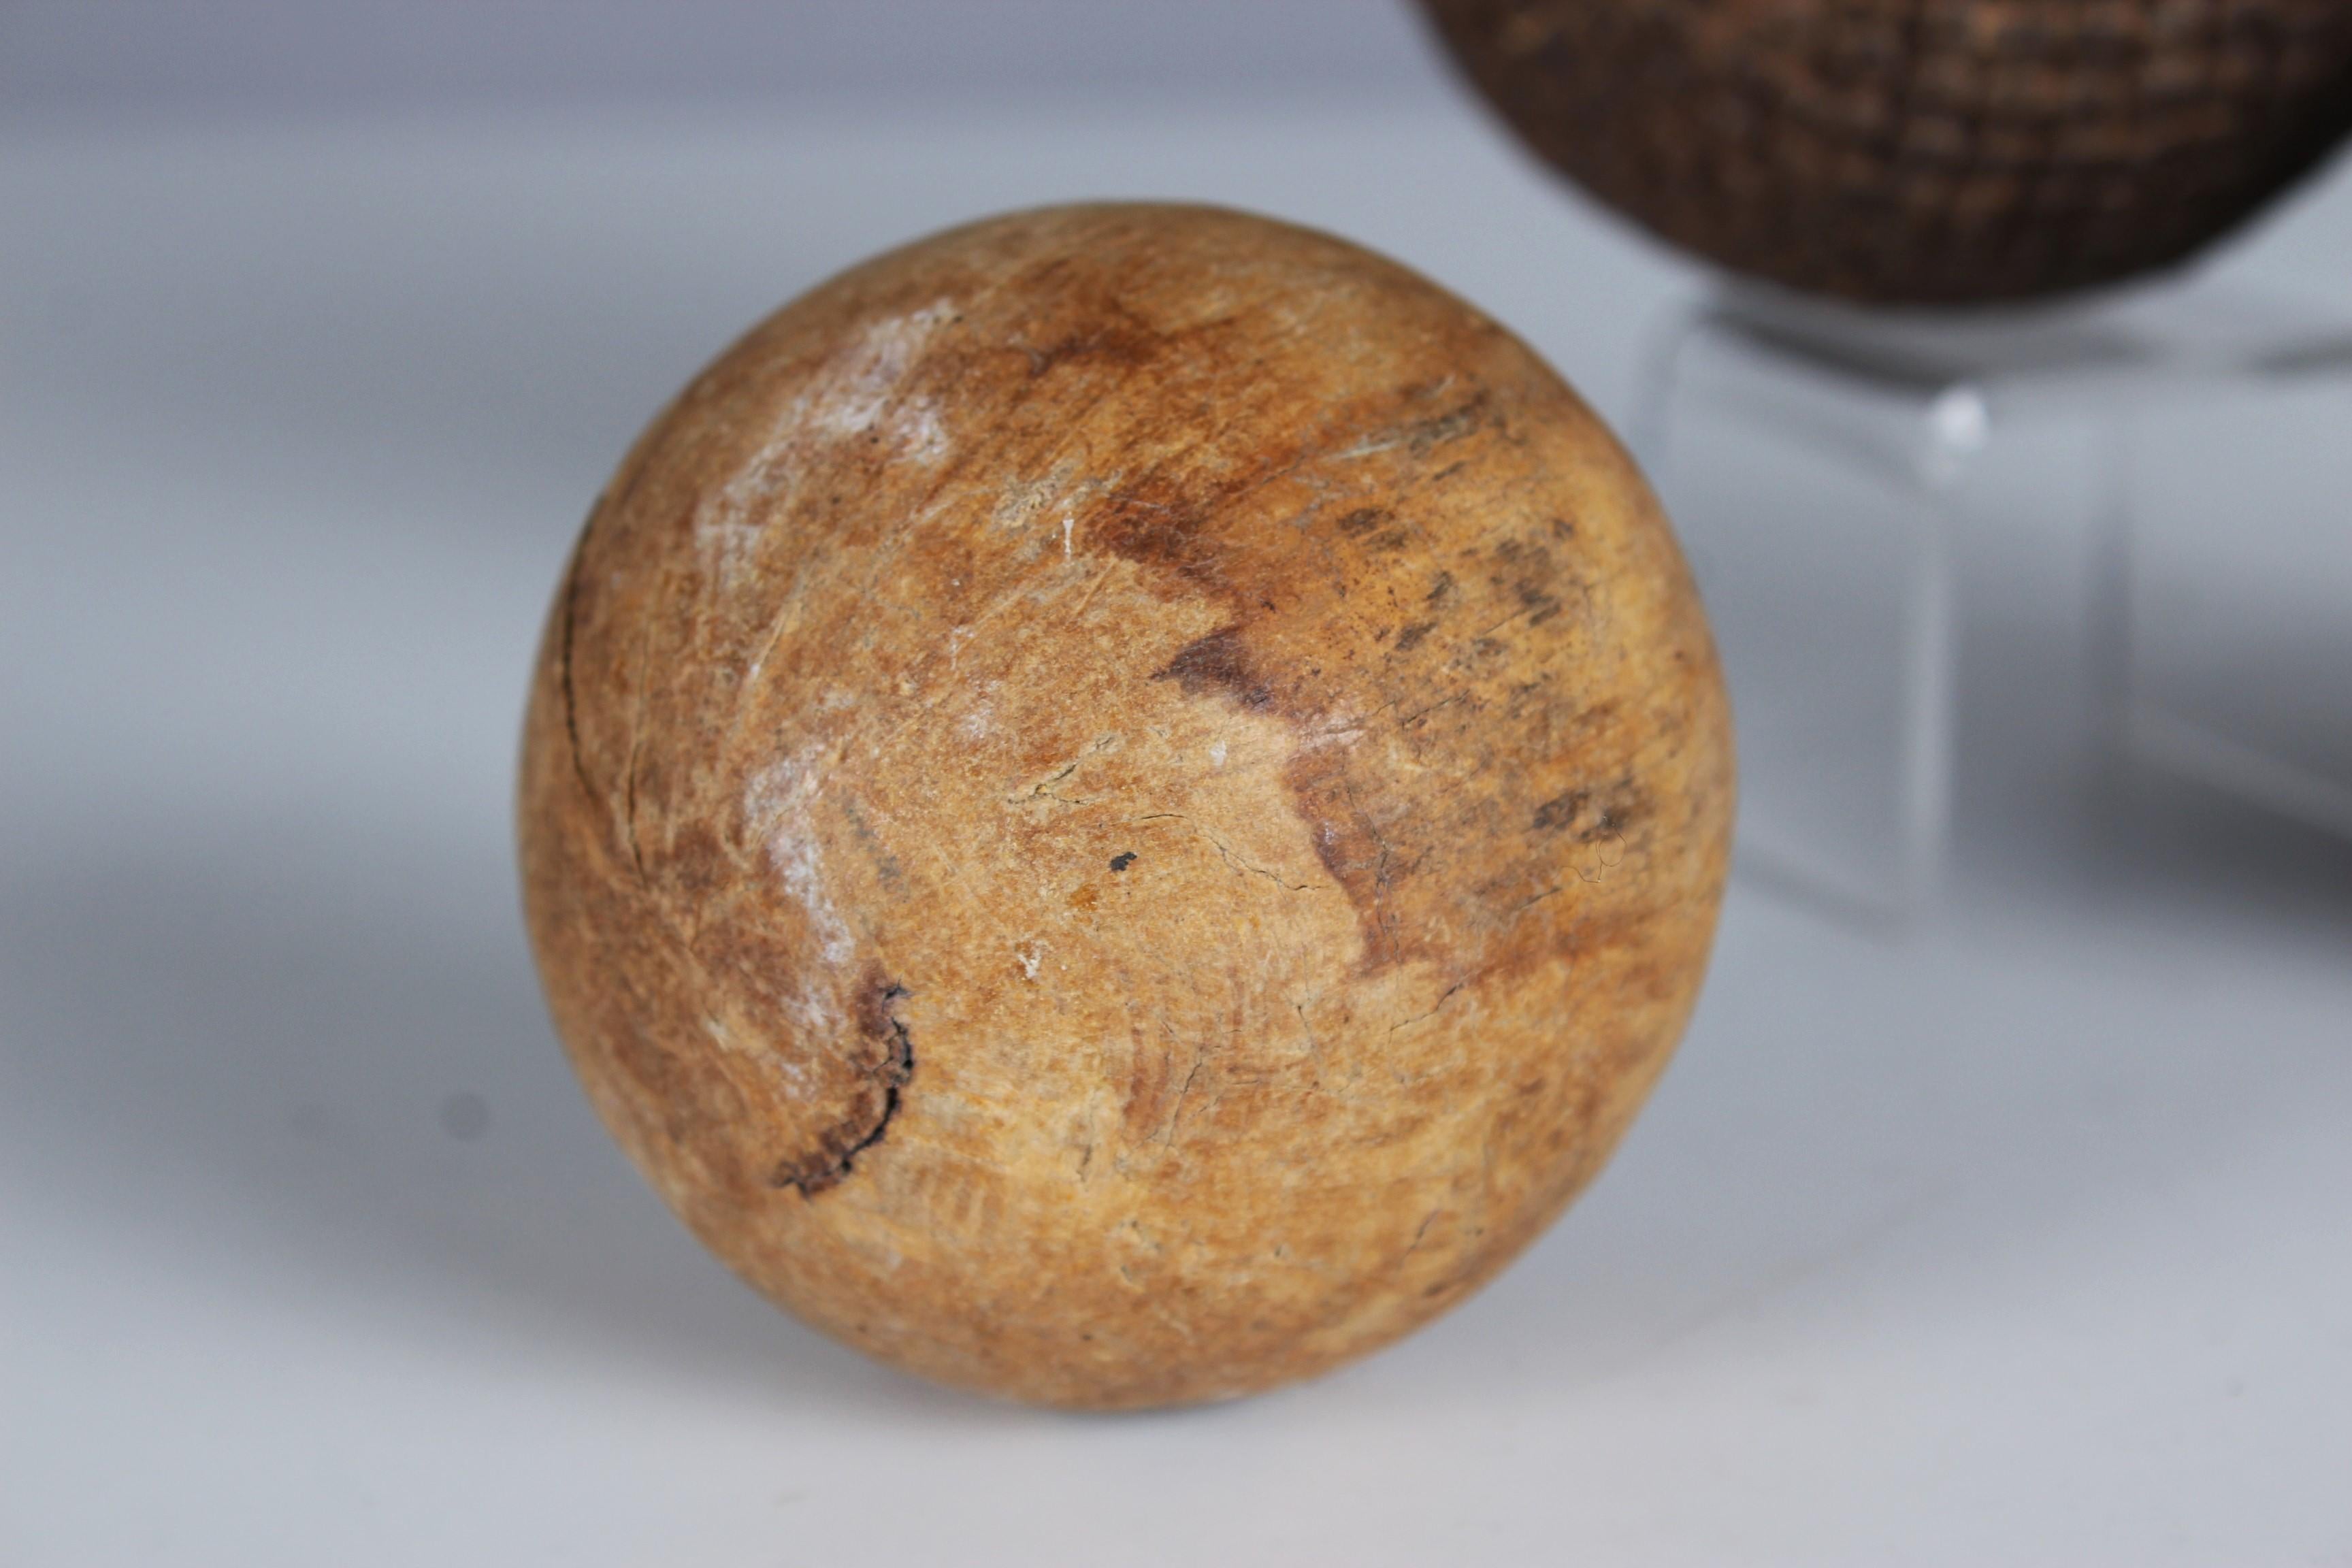 Magnifique et unique paire de boules et une boule cible, France, fin du 19e siècle.
Décoré du chiffre 